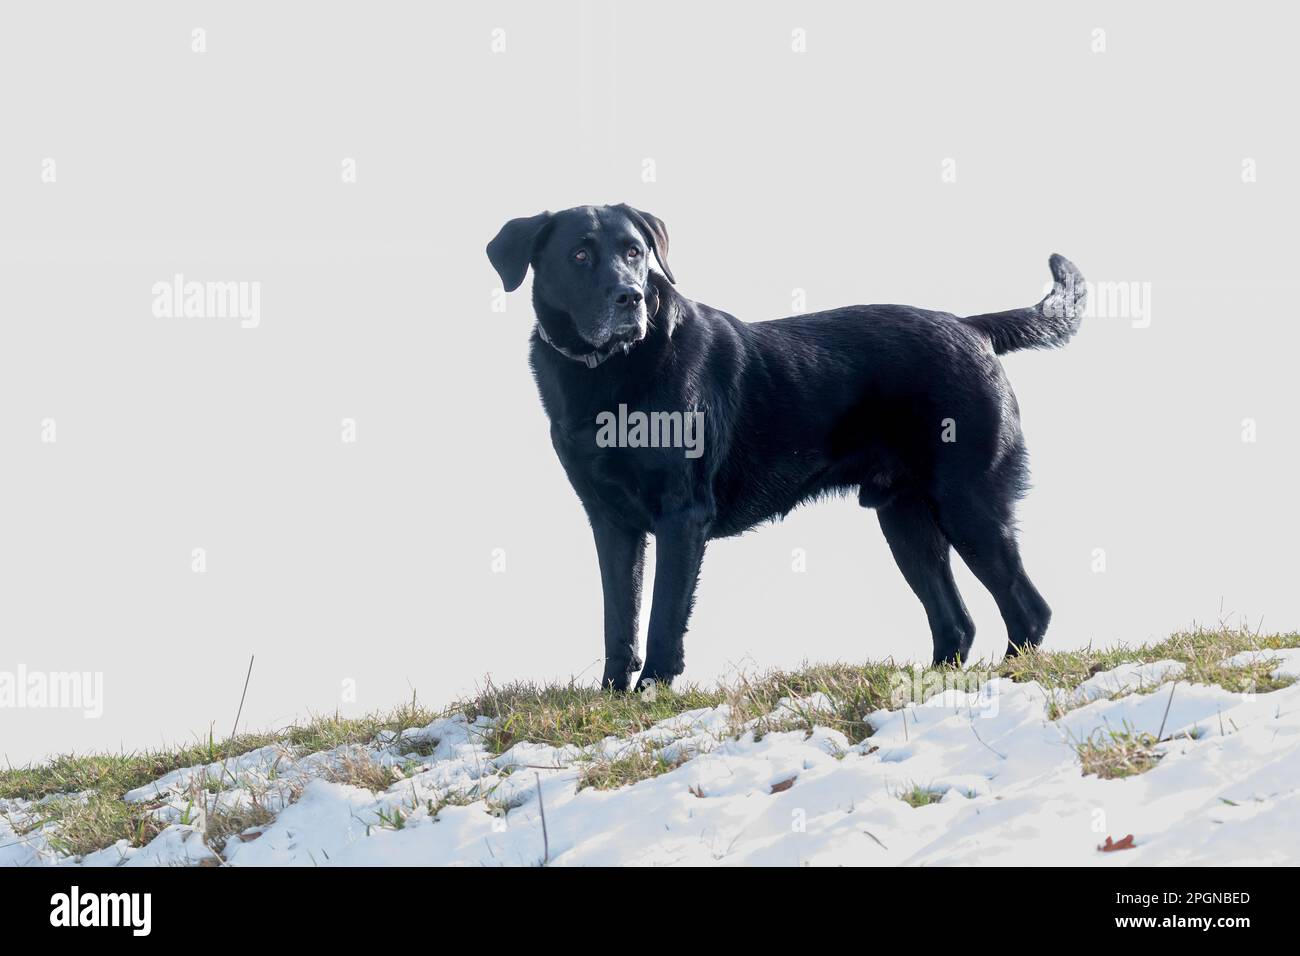 Ein schwarzer labrador Retriever steht auf einem schneebedeckten Feld. Der Hintergrund ist weiß, sodass Platz zum Kopieren vorhanden ist. Stockfoto